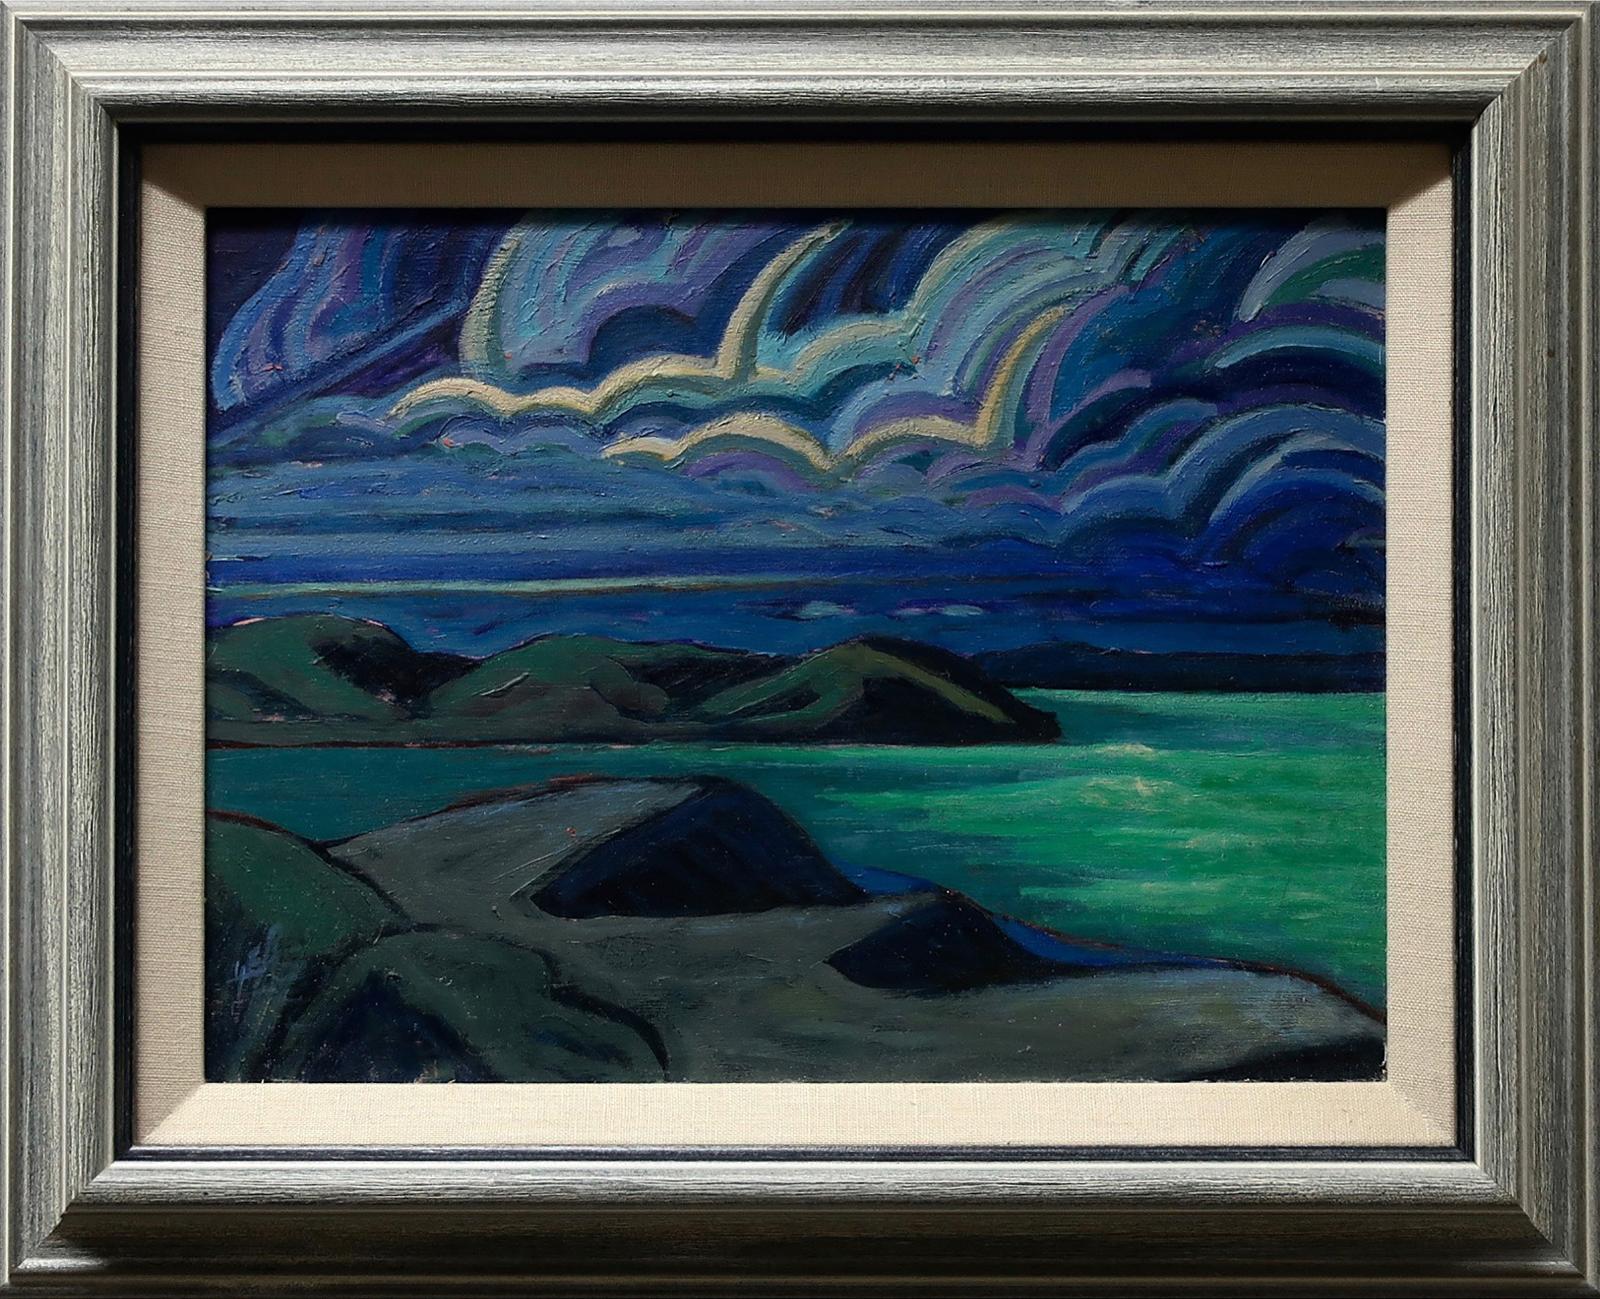 James Edward Hergel (1961) - Moonlit Labrador Coastline